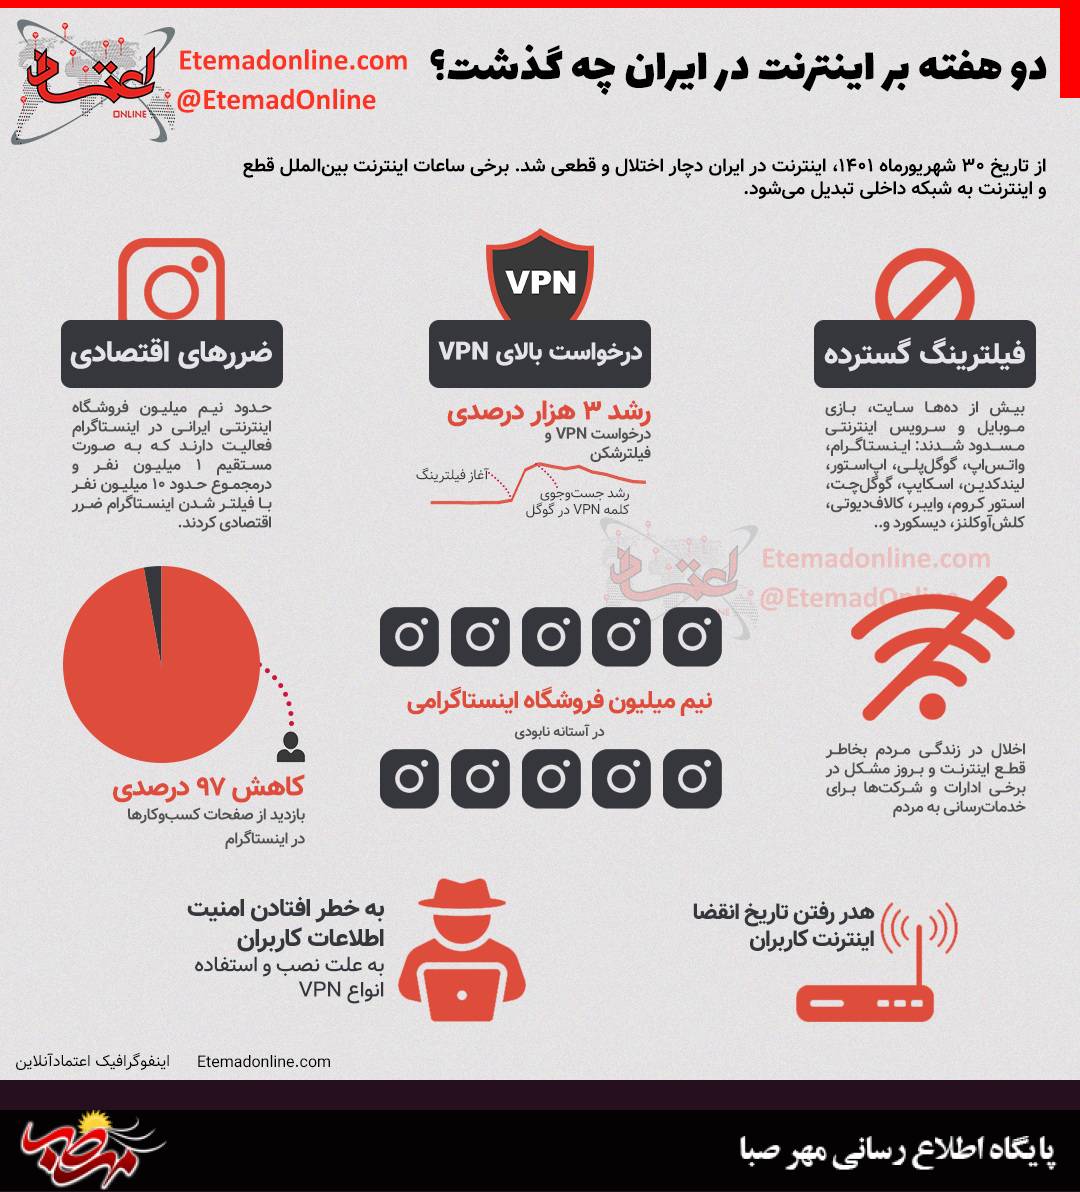 اینفوگرافی دو هفته بر اینترنت در ایران چه گذشت؟